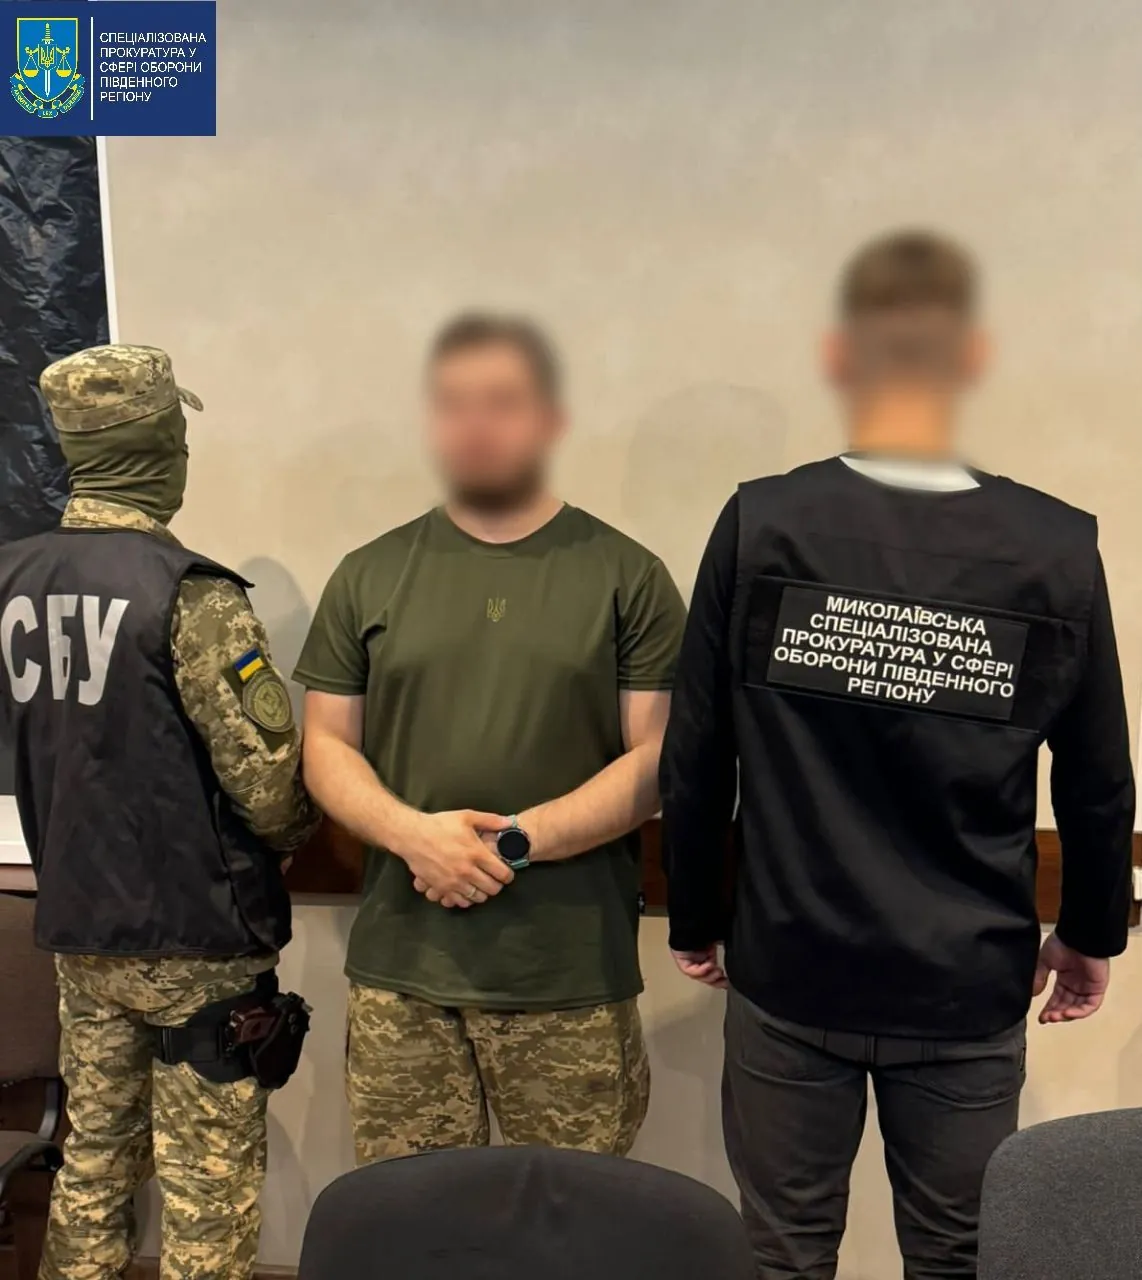 Передавав агенту рф заборонену інформацію: на Миколаївщині повідомлено про підозру військовому